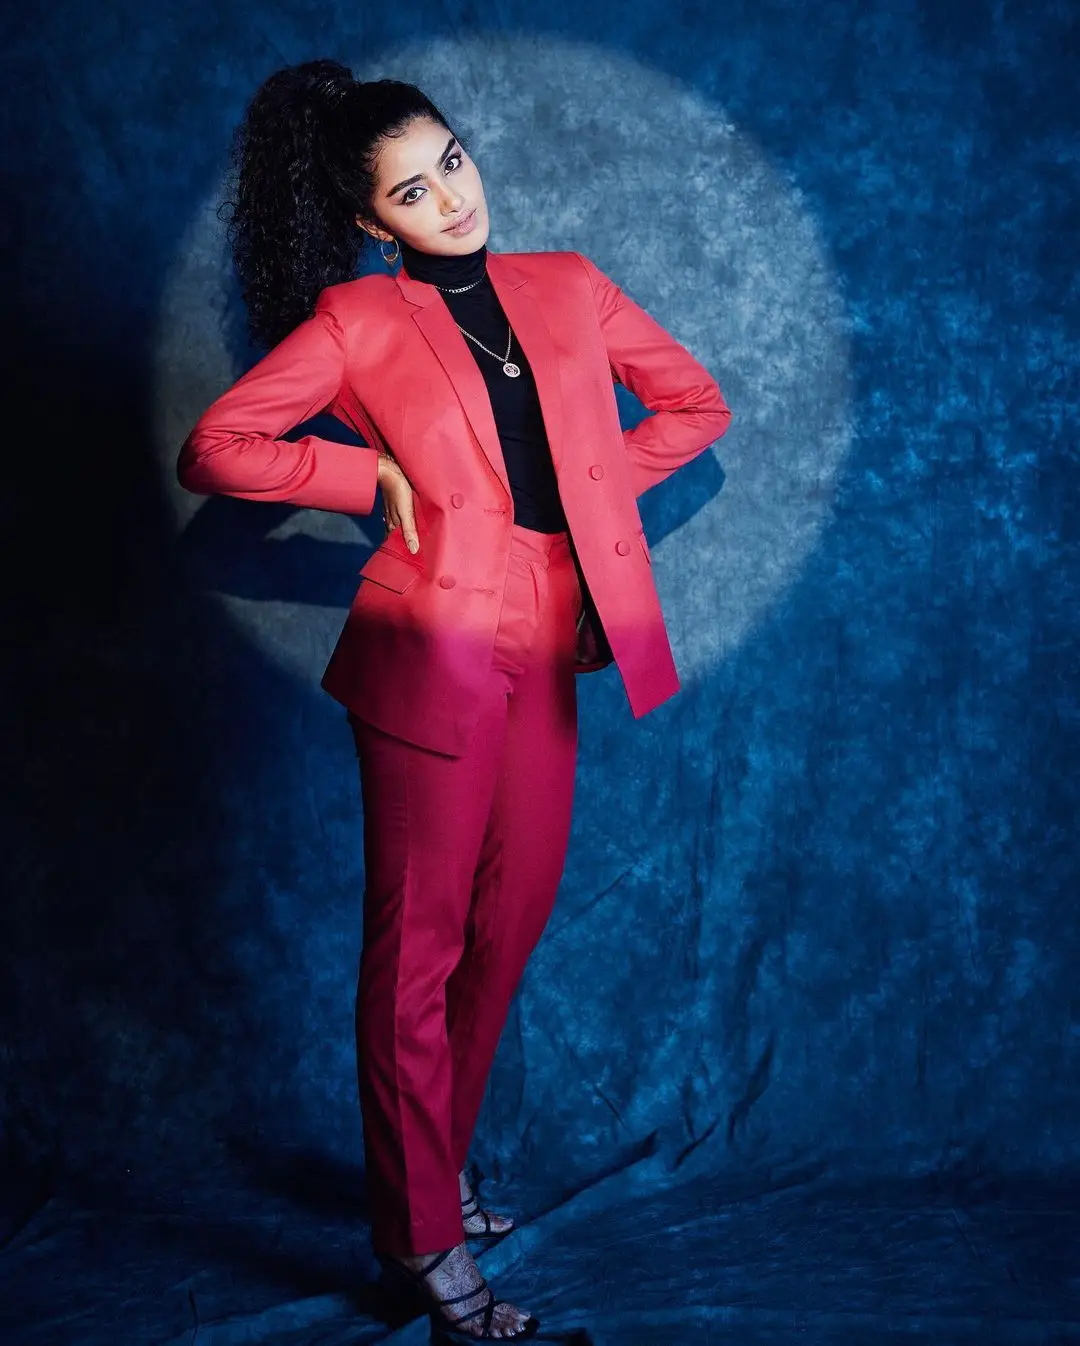 Anupama Parameswaran Stylish Photos in Red Suit 